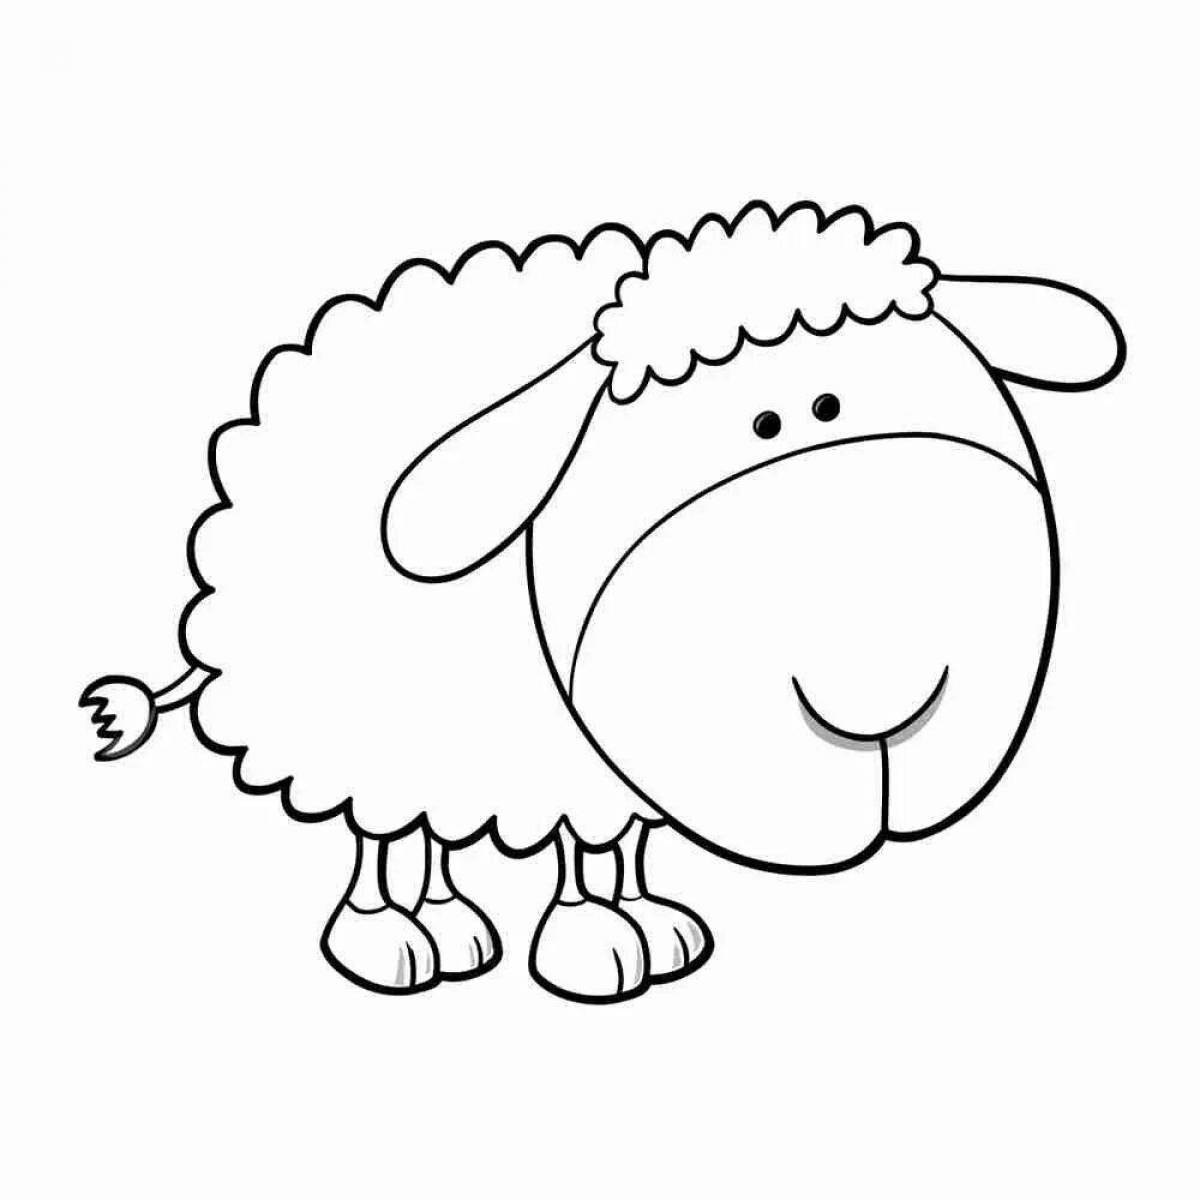 Holiday suzy sheep coloring book